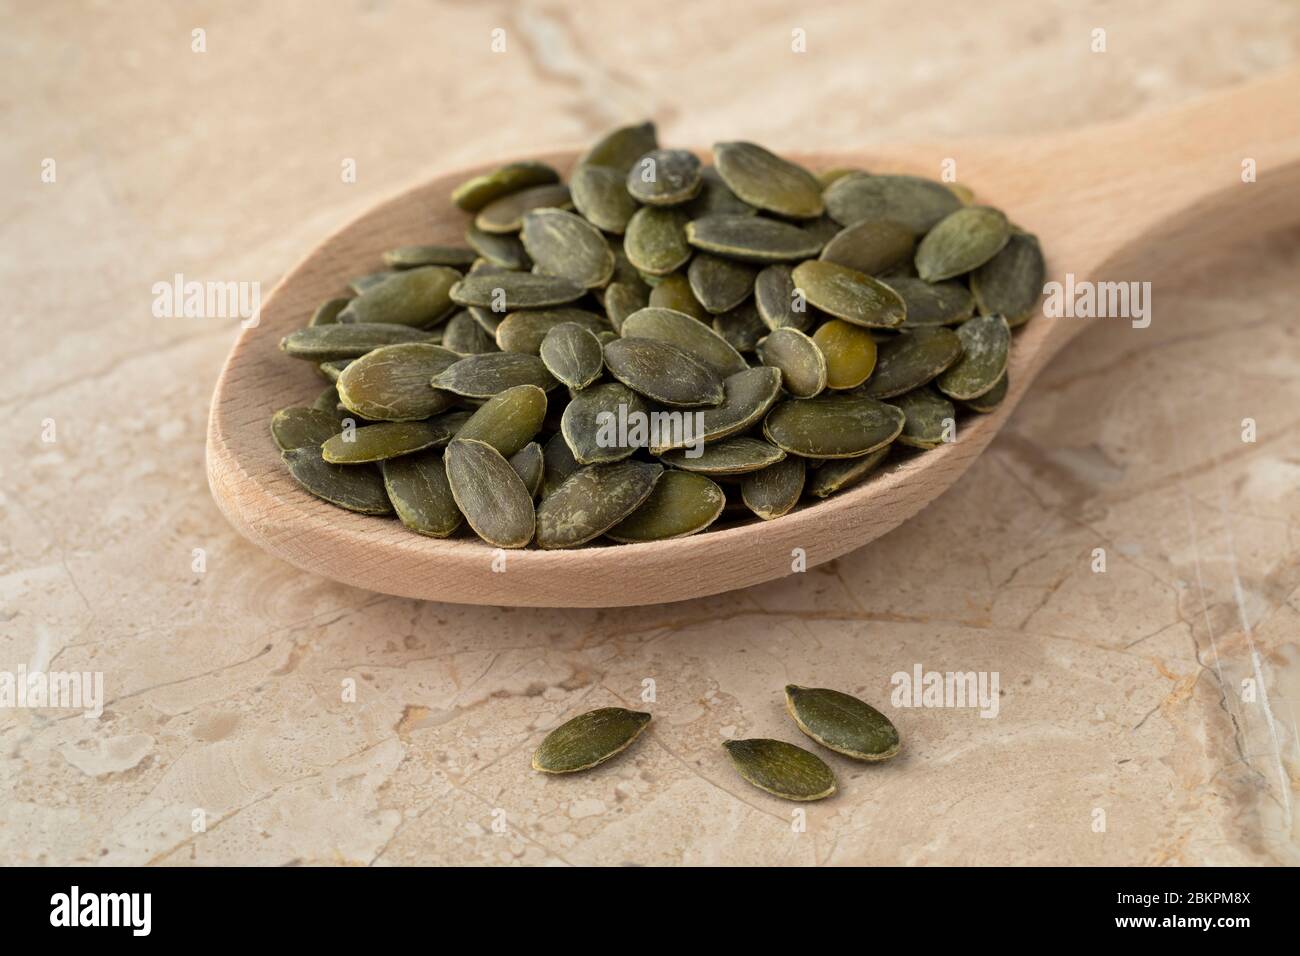 Cuchara de madera con semilla de calabaza seca como ingrediente Foto de stock